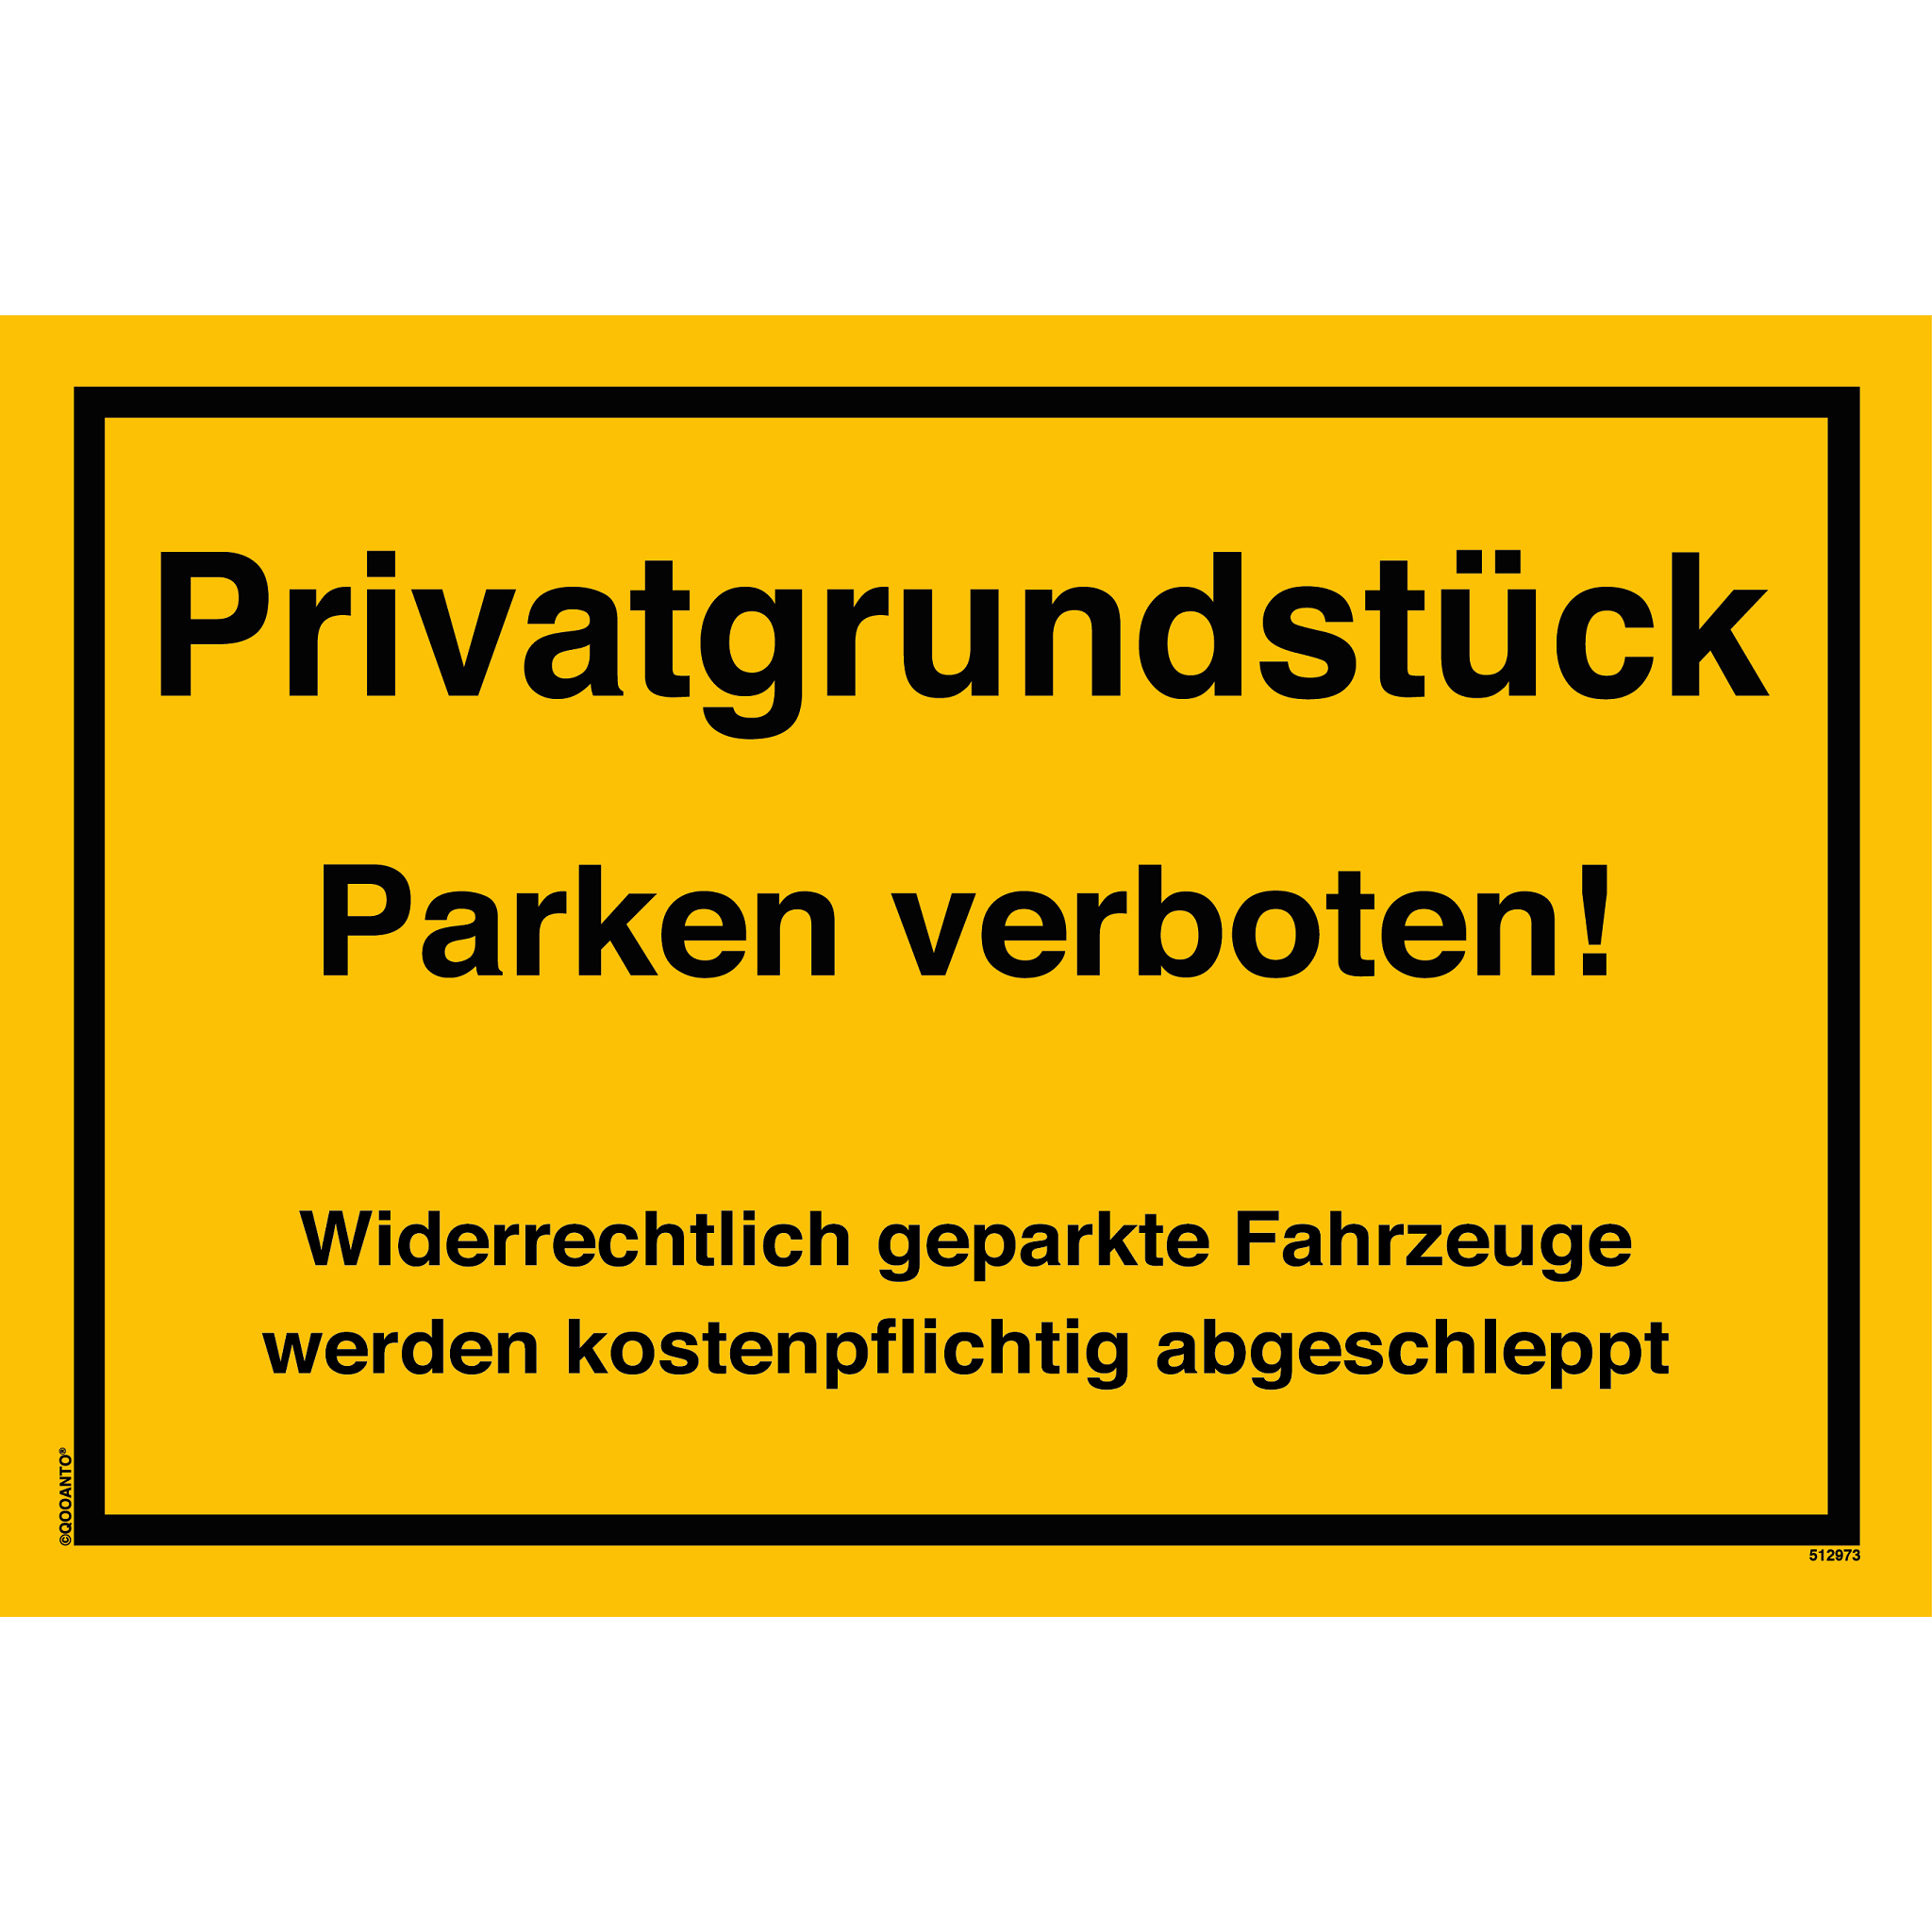 Privatgrundstück Parken verboten! Widerrechtlich geparkte Fahrzeuge werden kostenpflichtig abgeschleppt, gelb, Schild